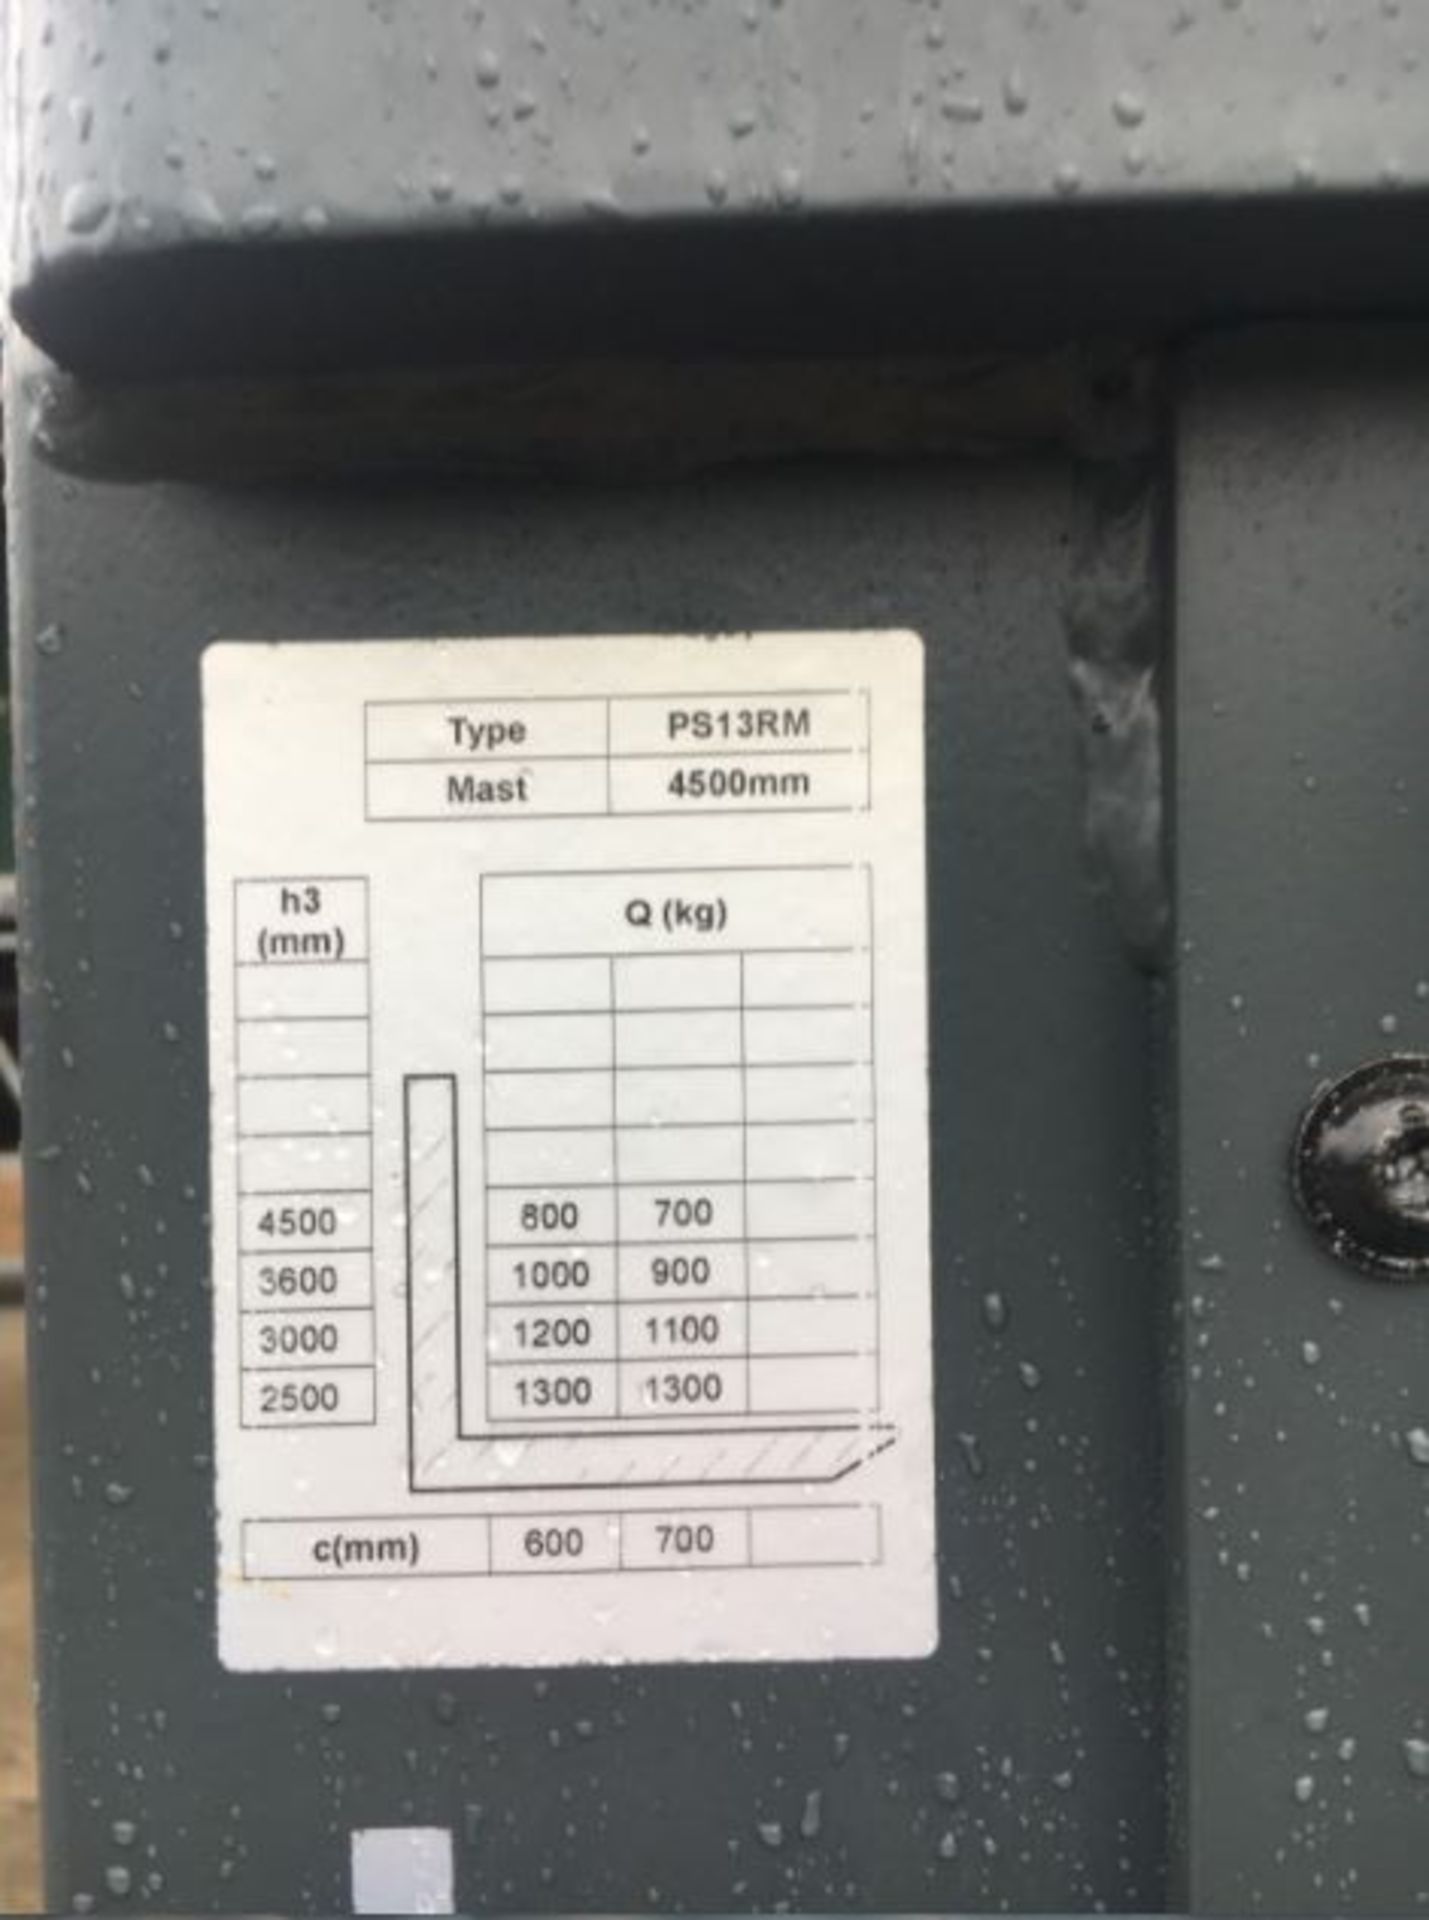 2017 NOBLELIFT PS13RM FORKLIFT 1300KG TRIPLE MAST 4500MM *PLUS VAT* - Image 8 of 8